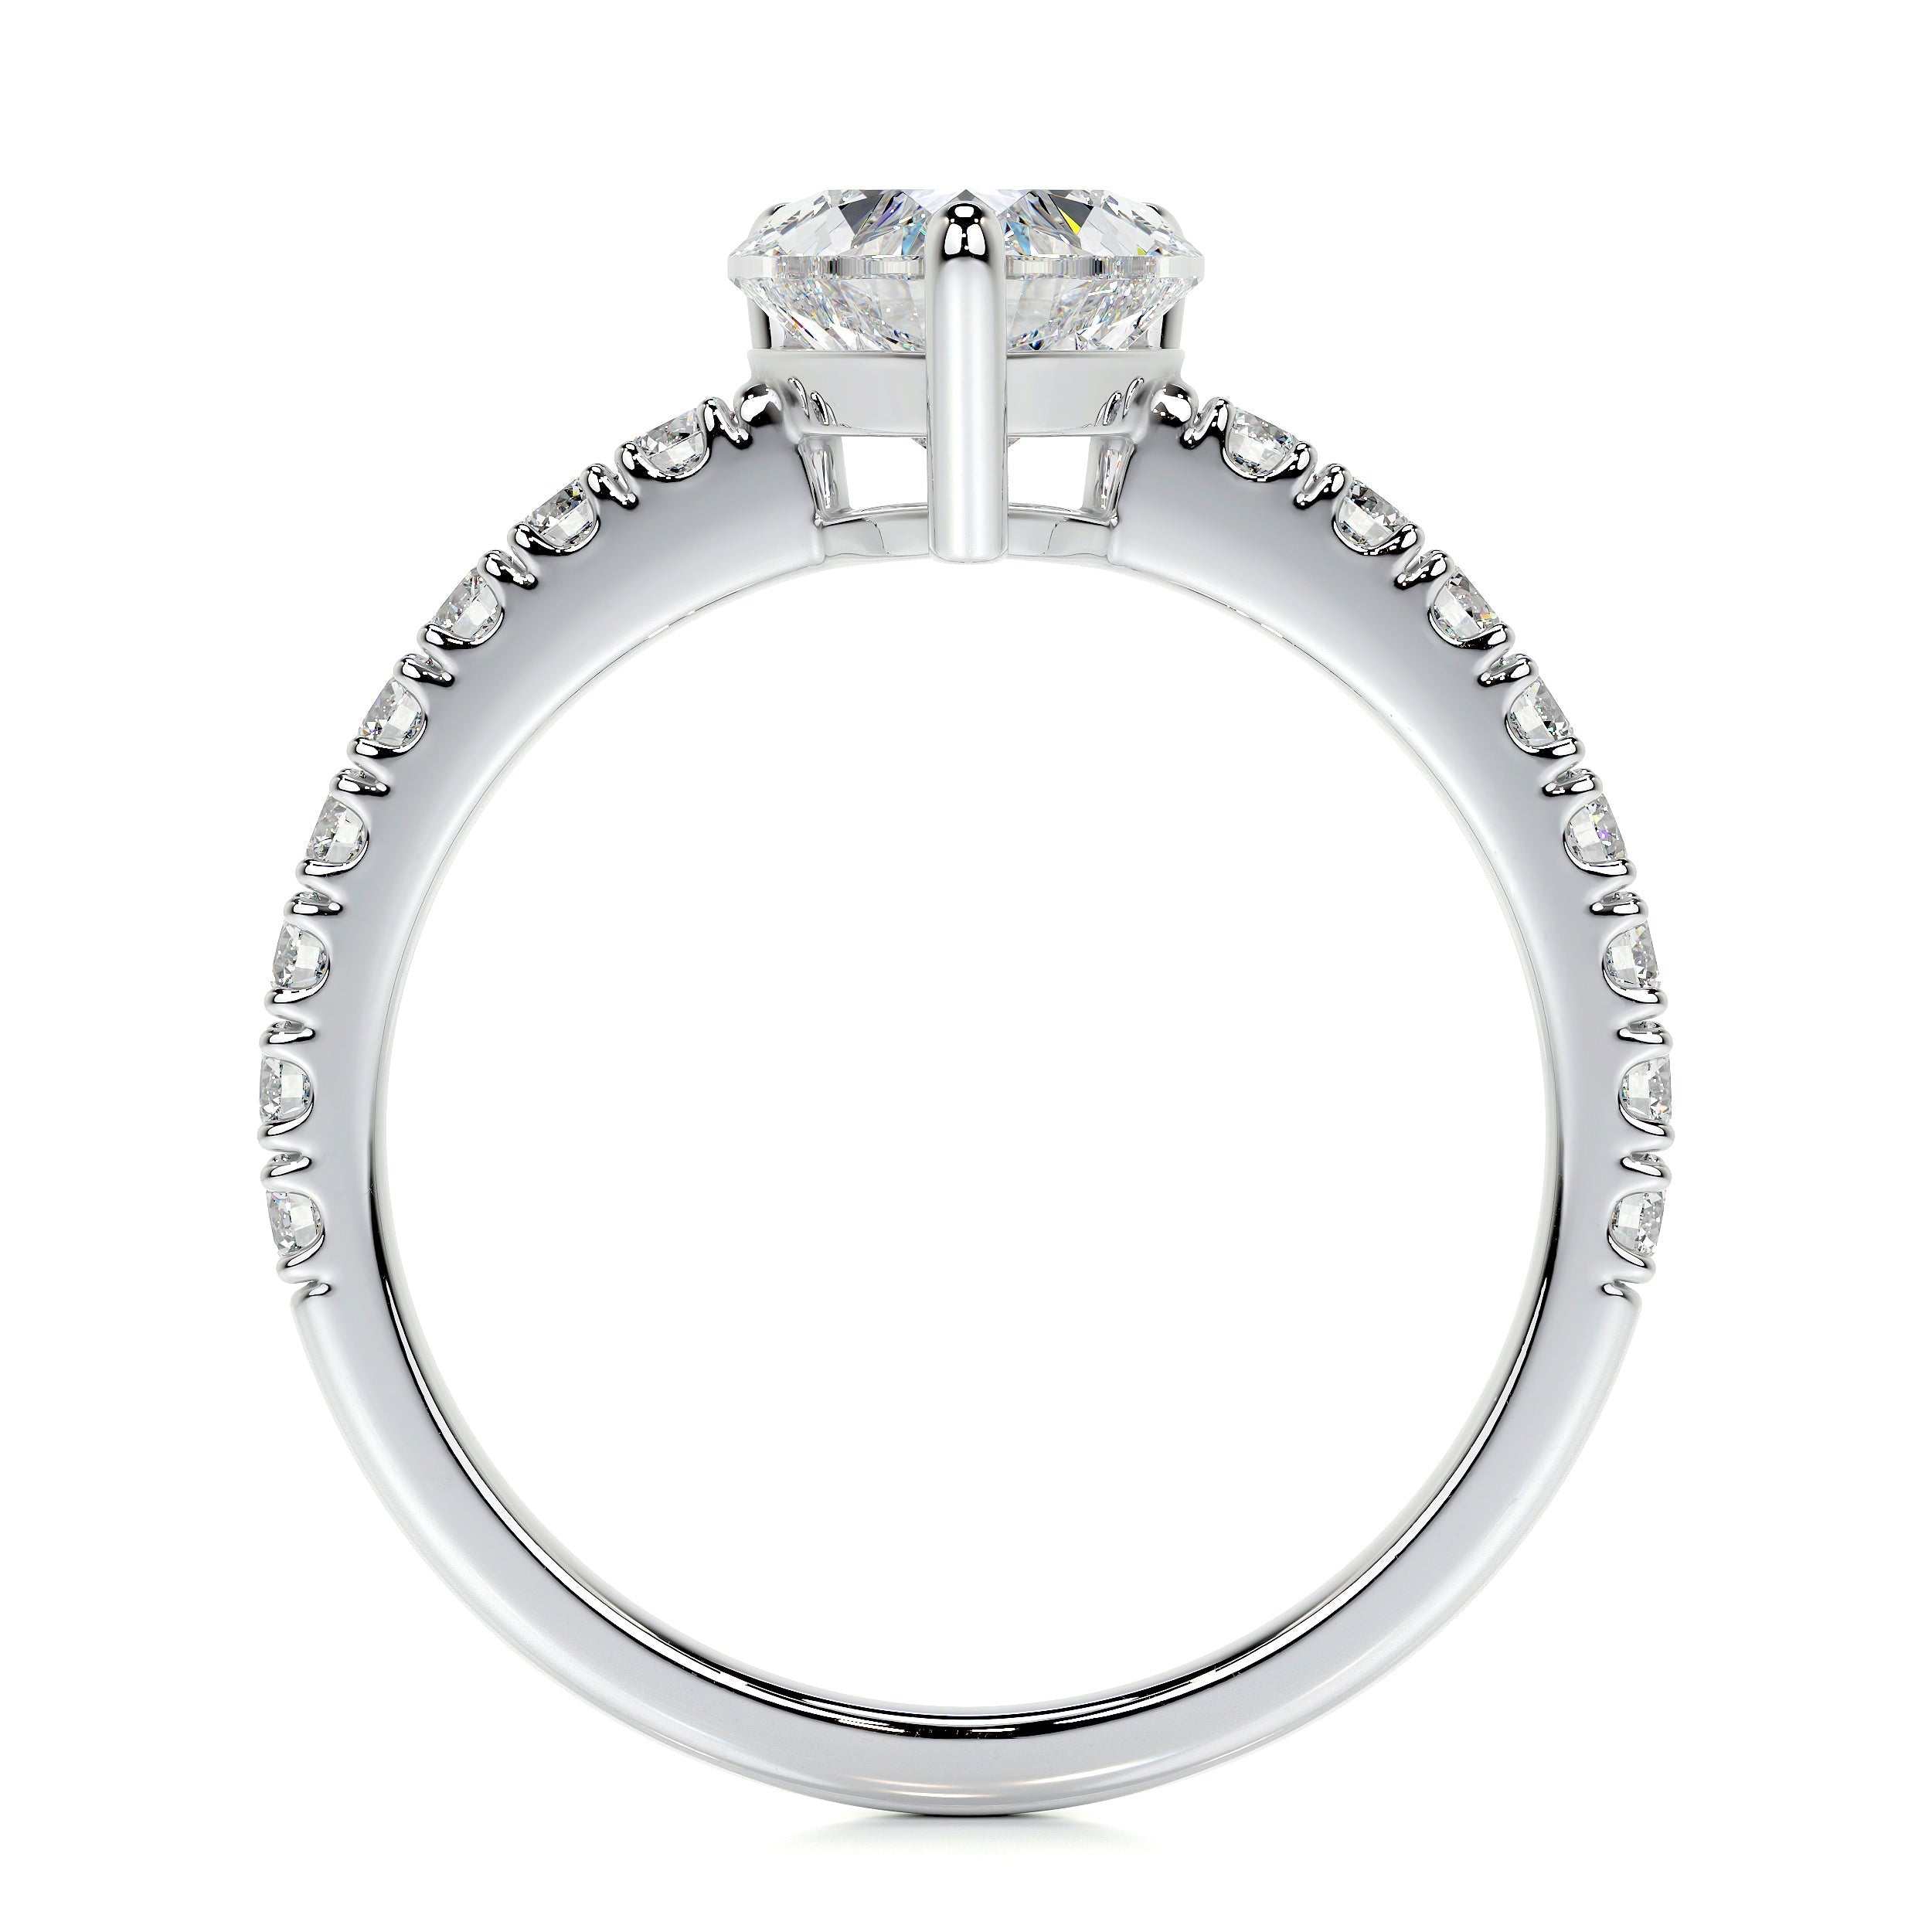 Audrey Lab Grown Diamond Ring   (1.3 Carat) -18K White Gold